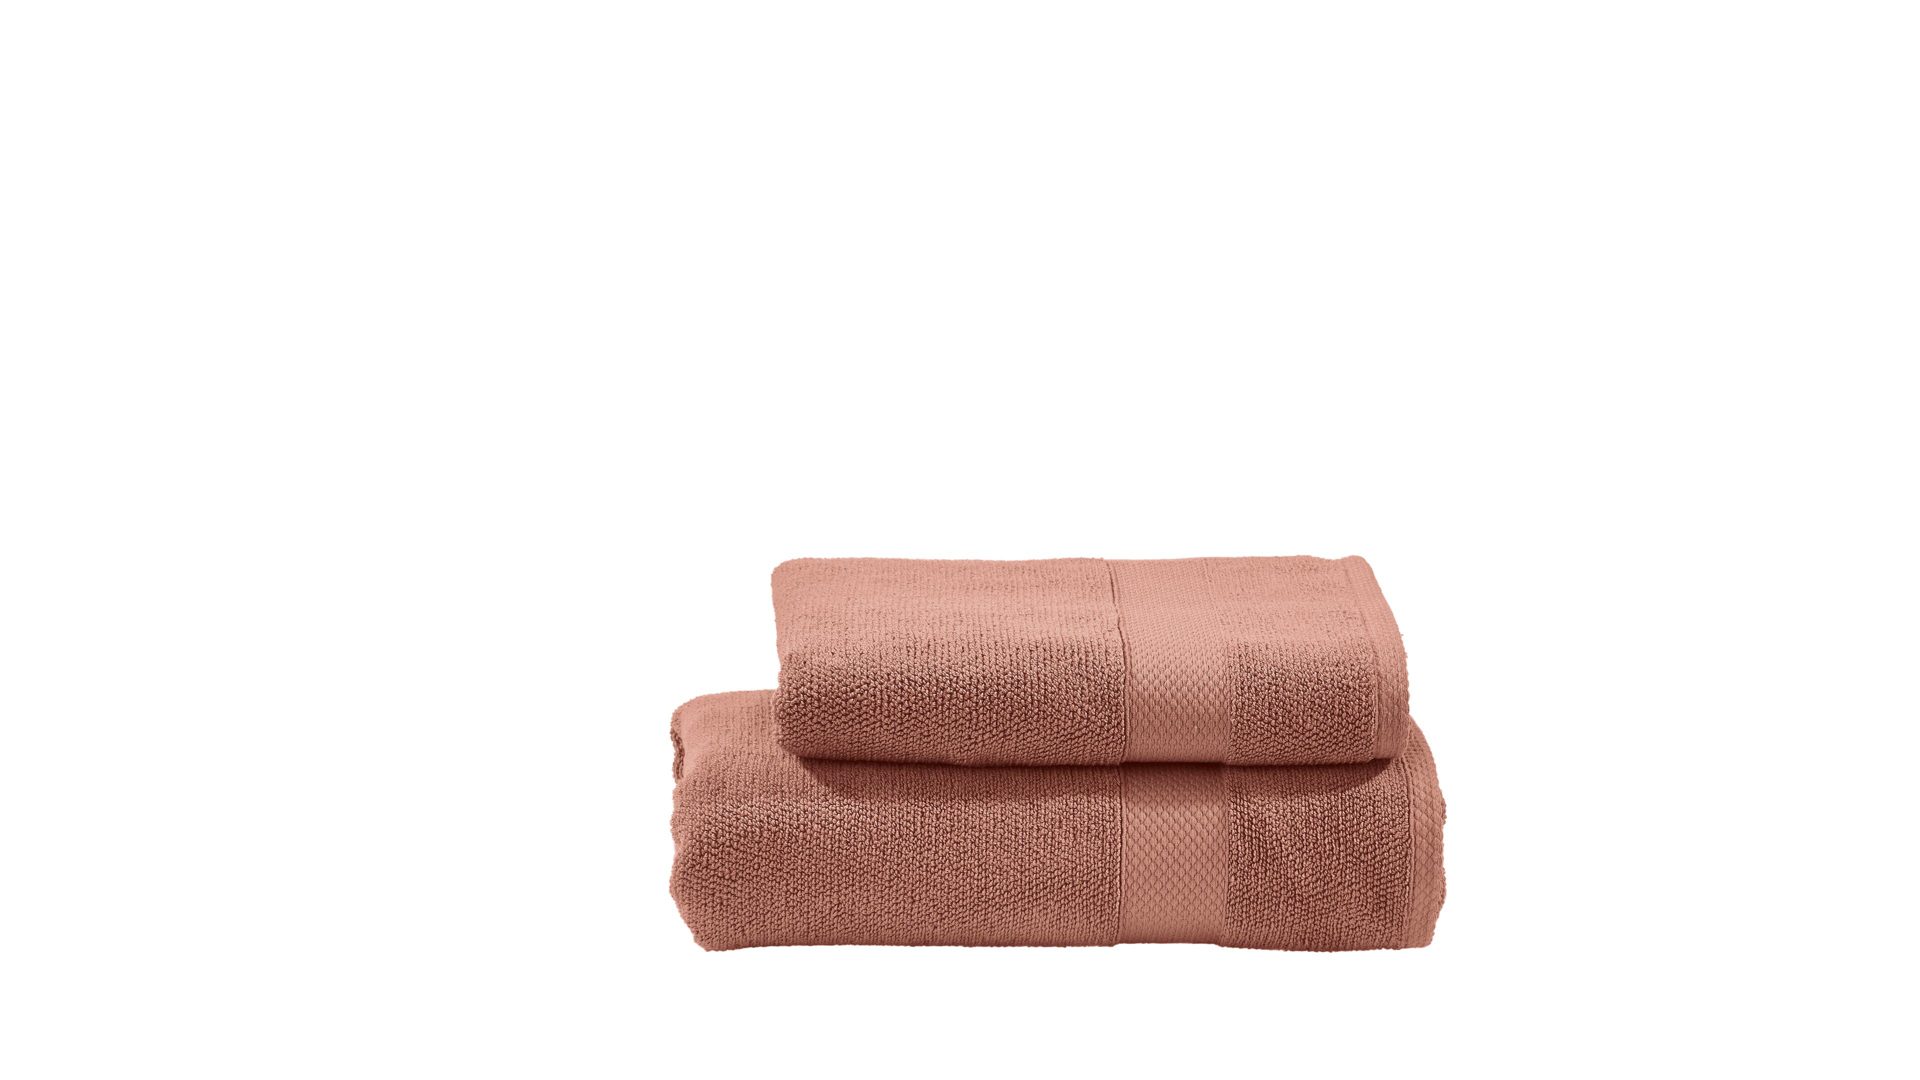 Handtuch-Set Done® by karabel home company aus Stoff in Orange DONE® Handtuch-Set Deluxe - luxuriöse Heimtextilien wüstensandfarbene Baumwolle – zweiteilig